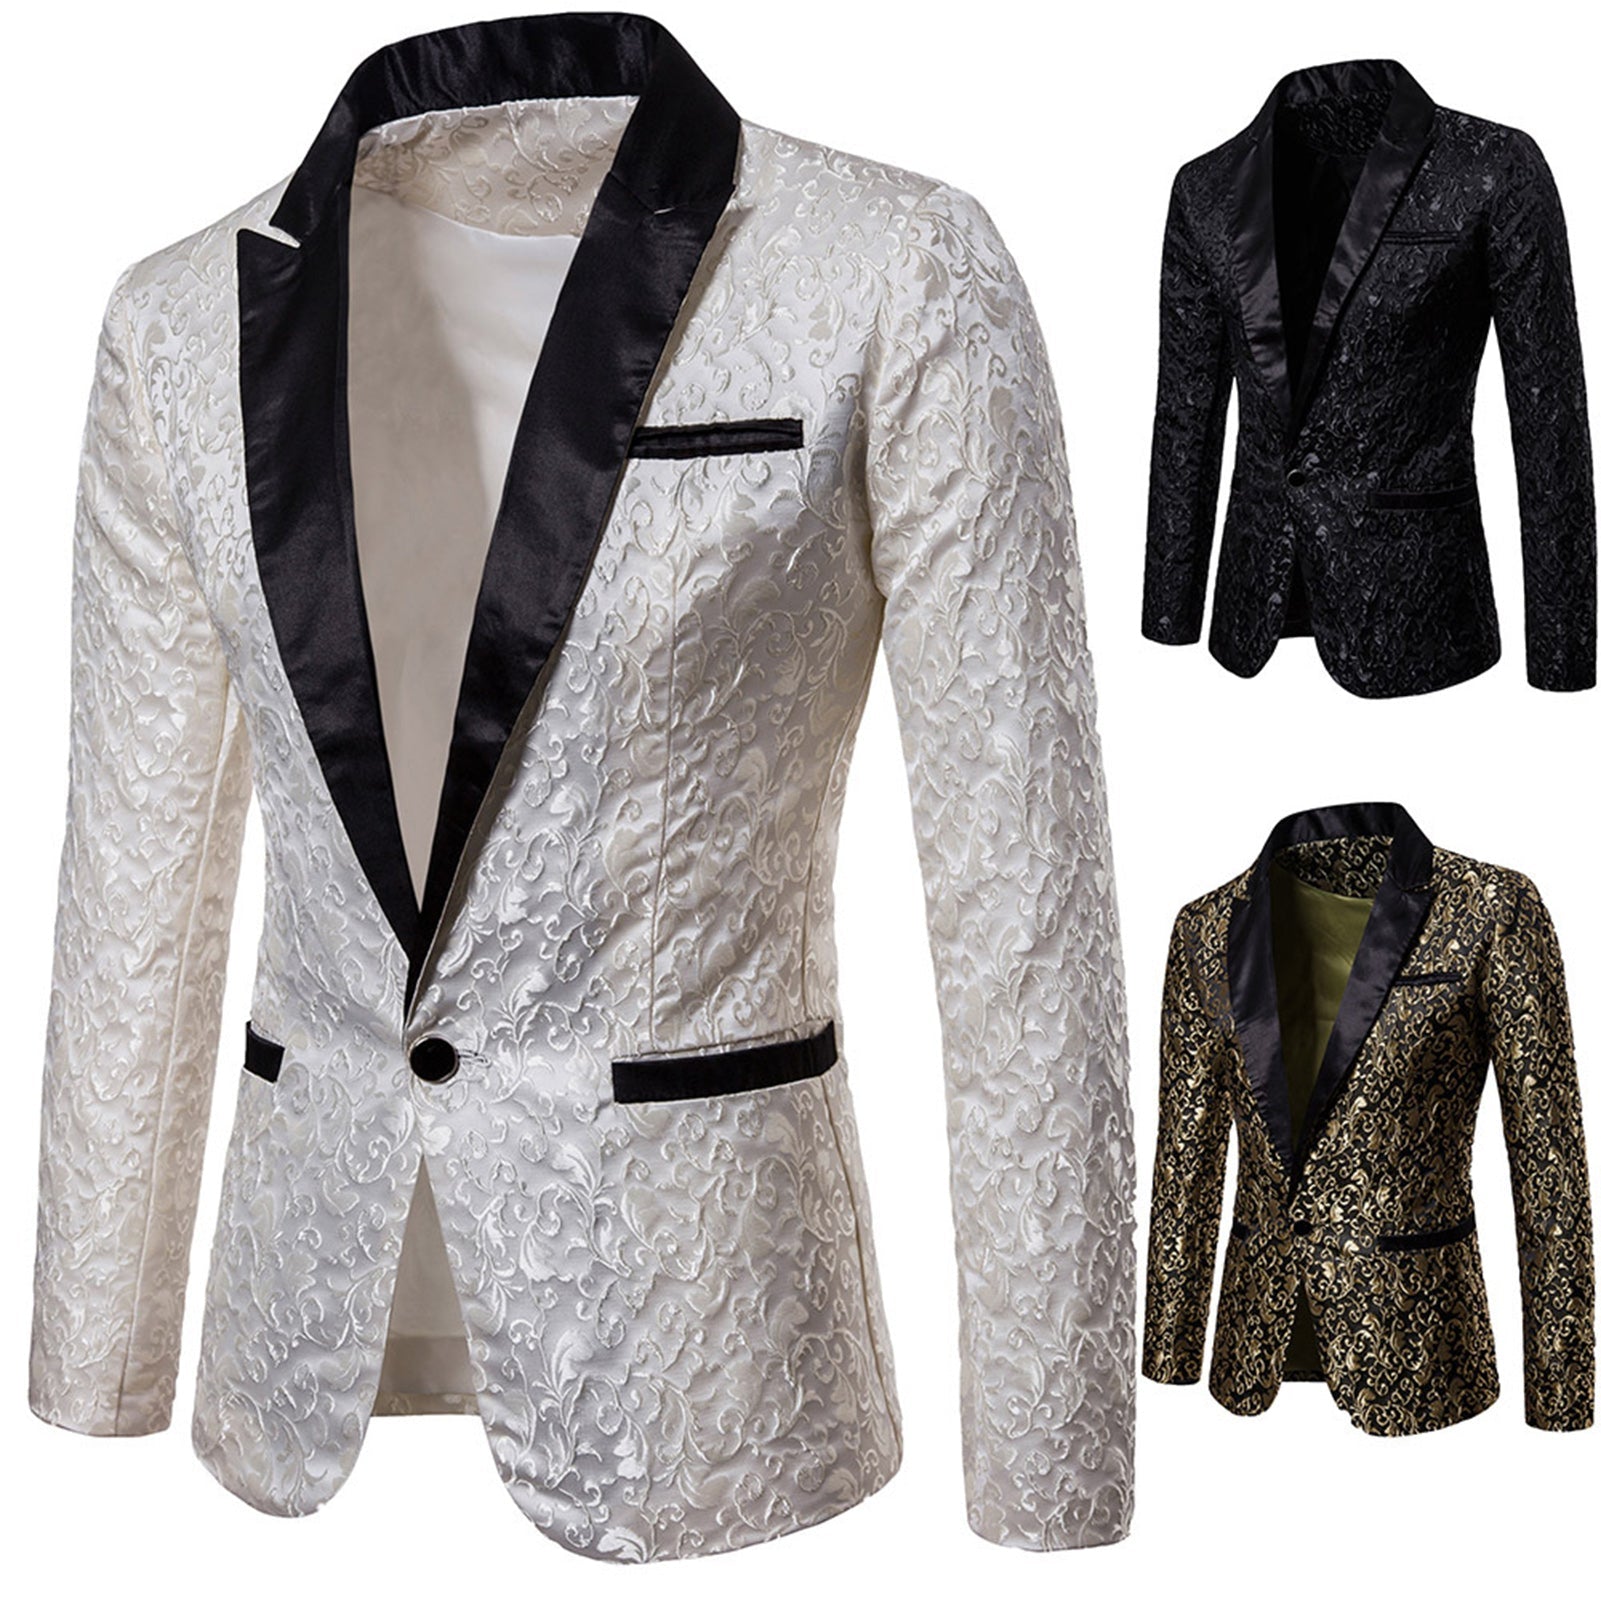 Men's Wedding Suit Coat Jacquard Single Button Pocket Lapel Suit